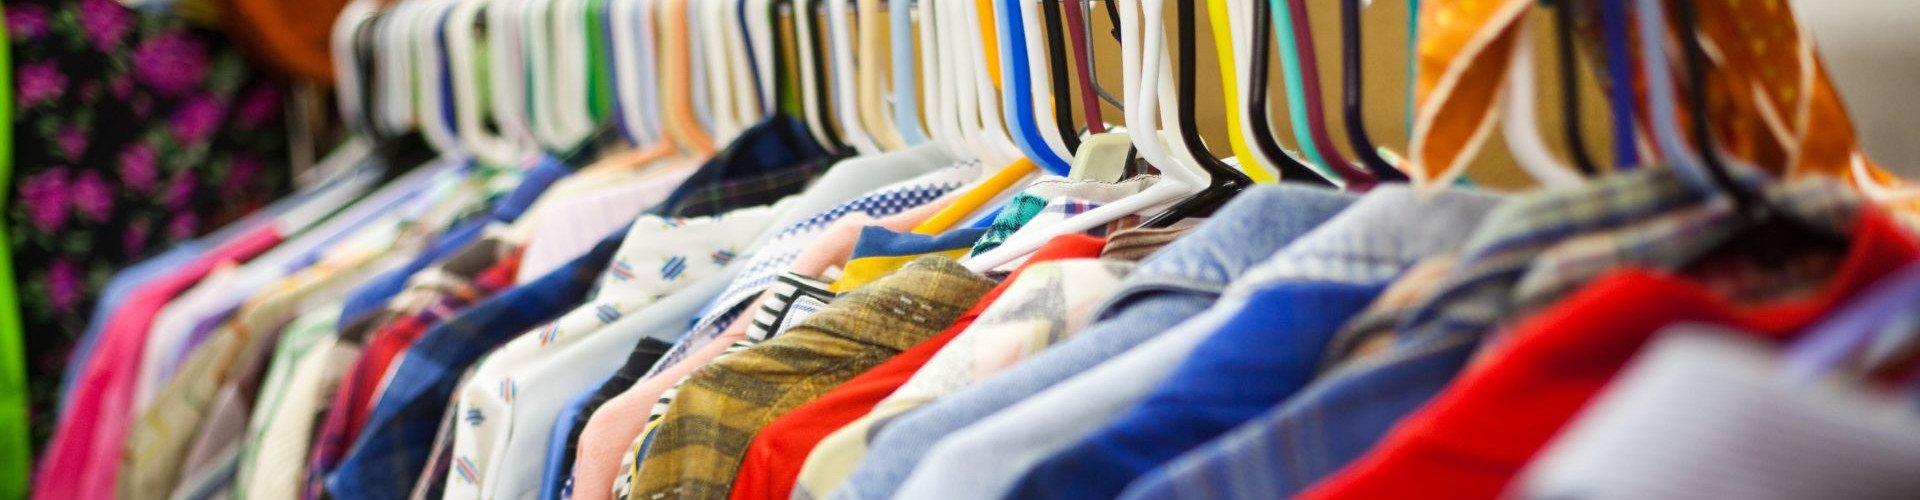 Impor Pakaian Bekas, Regulasi Lemah Bikin Banyak Celah